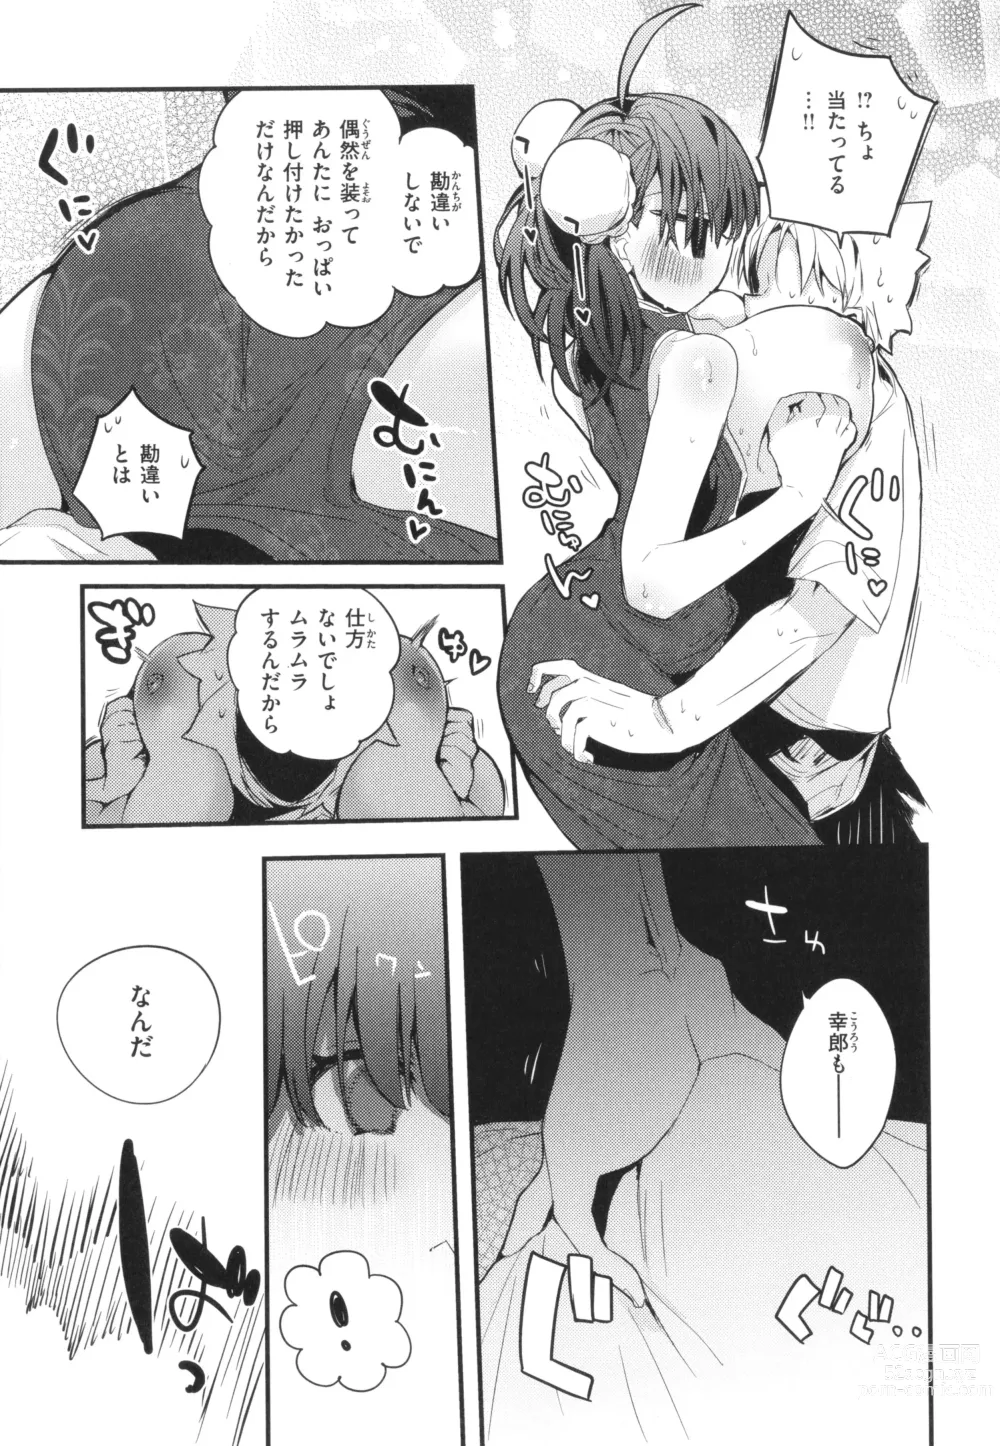 Page 13 of manga New Tawawa Paradise